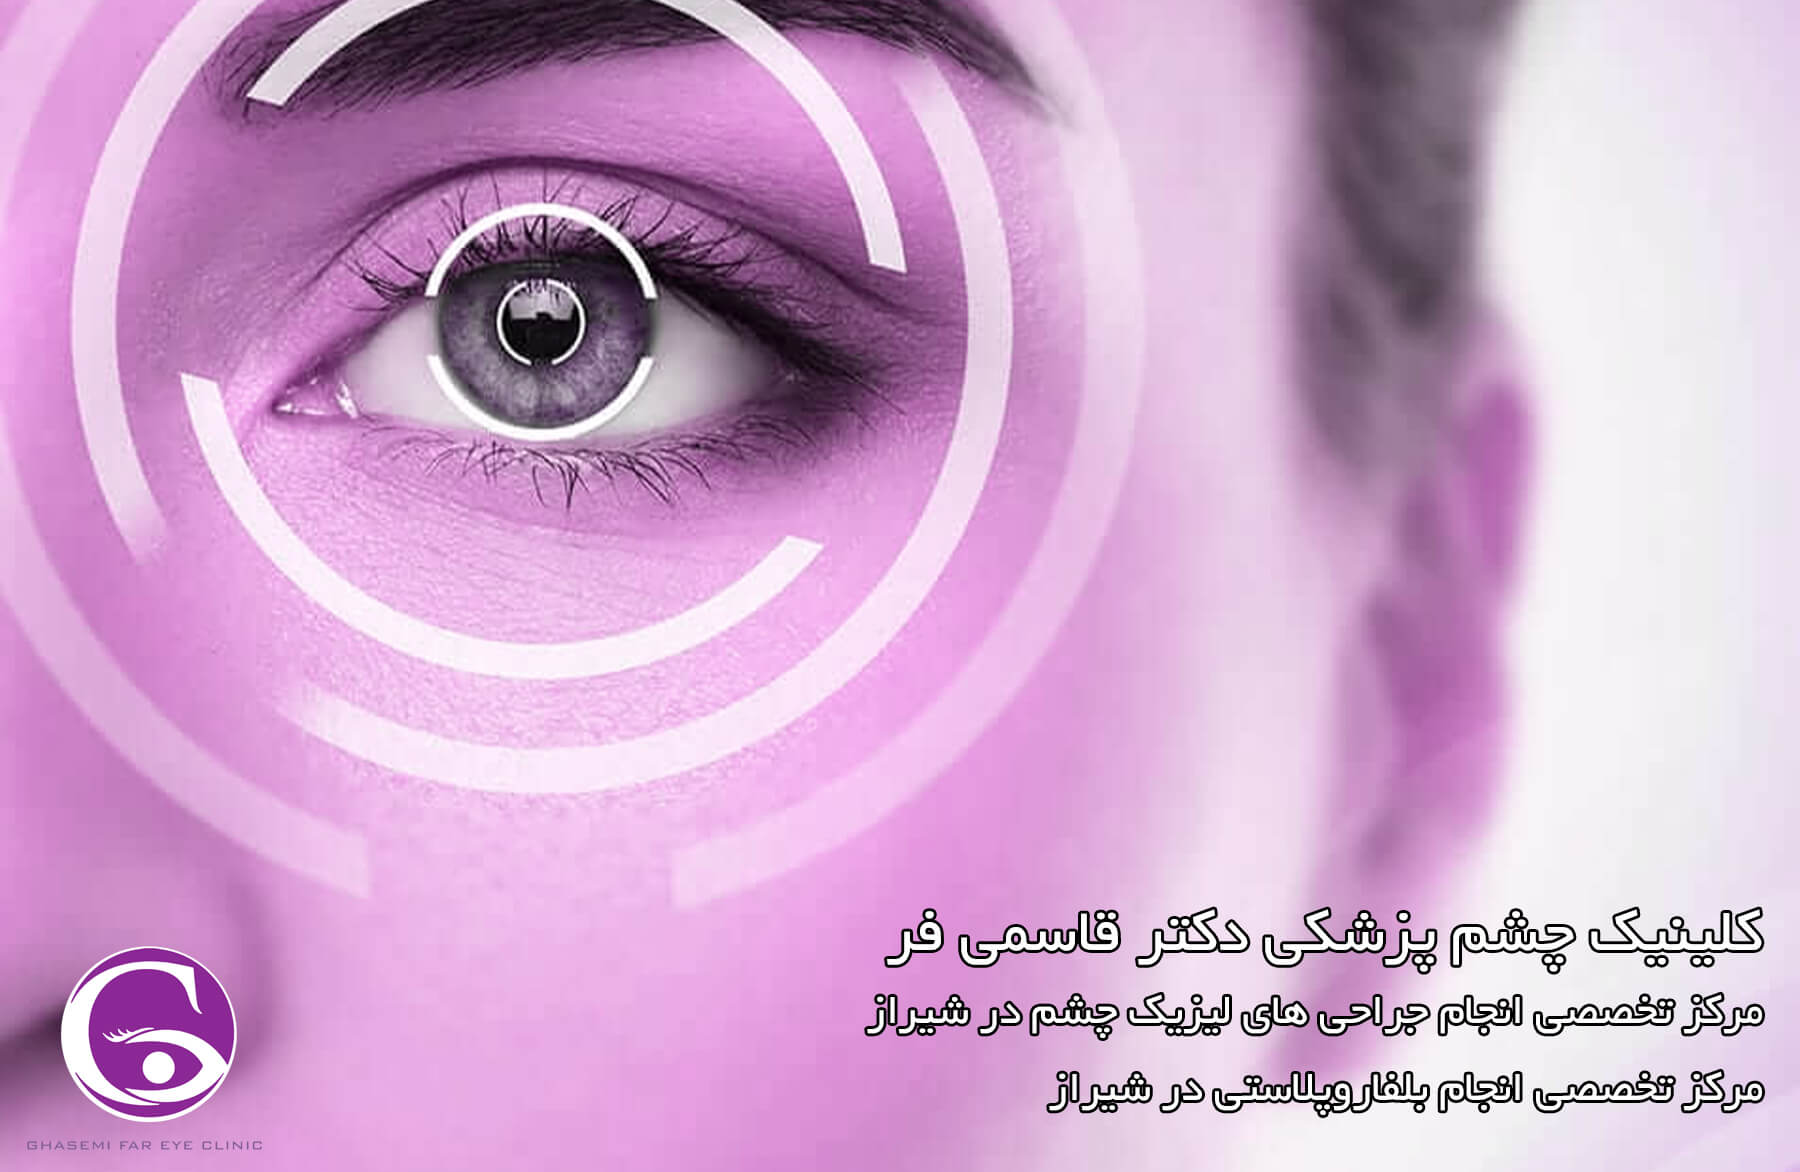 لیزیک چشم در شیراز